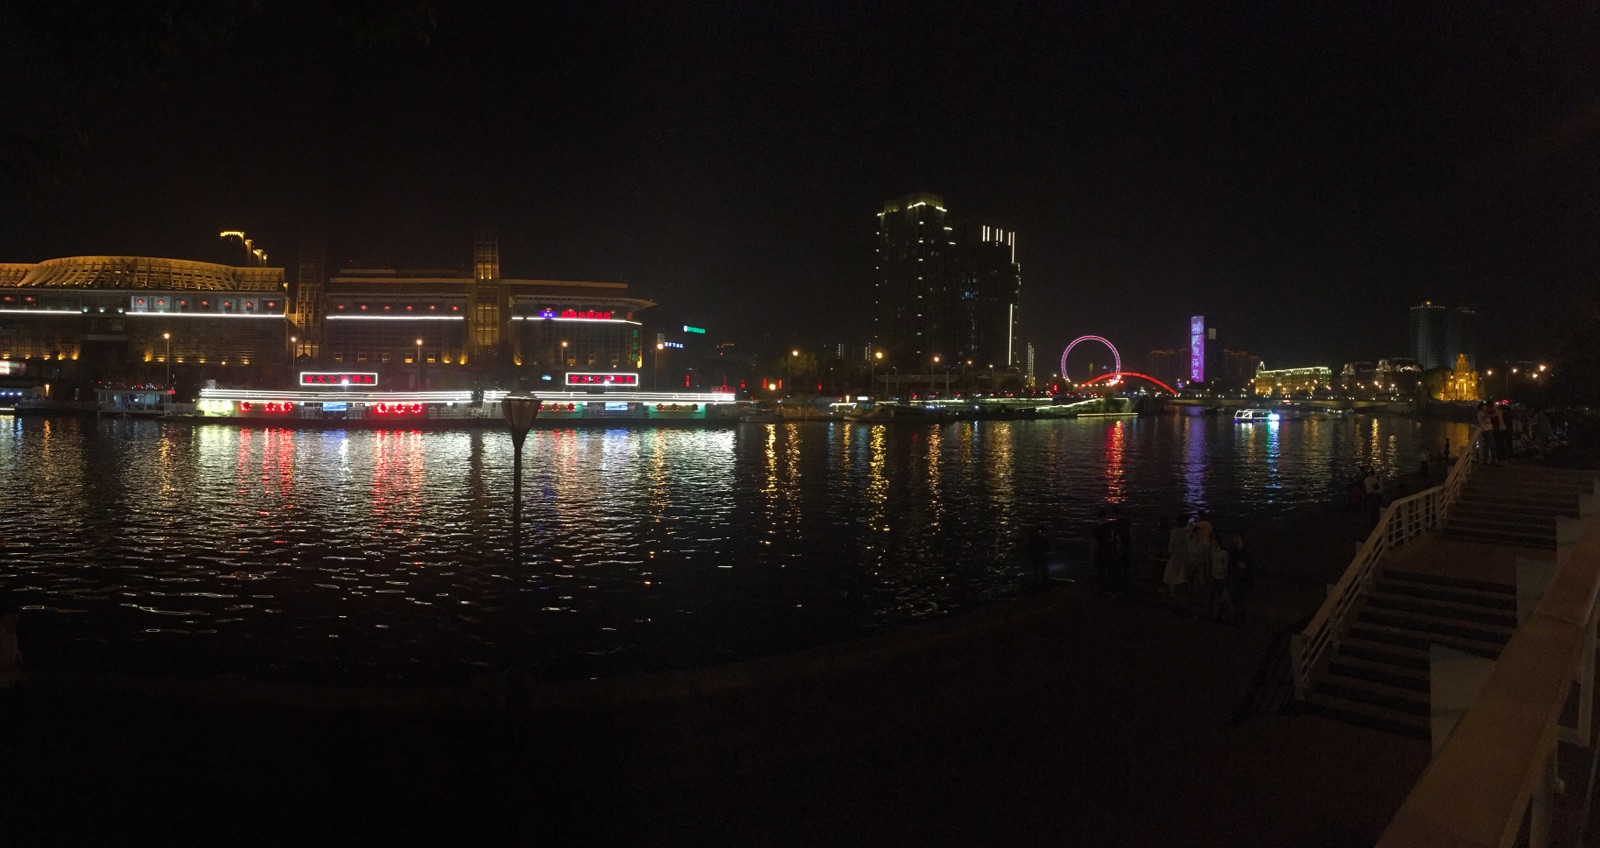 到天津之眼的时候已经傍晚了，本以为时间正好，我特别希望能在摩天轮上看完